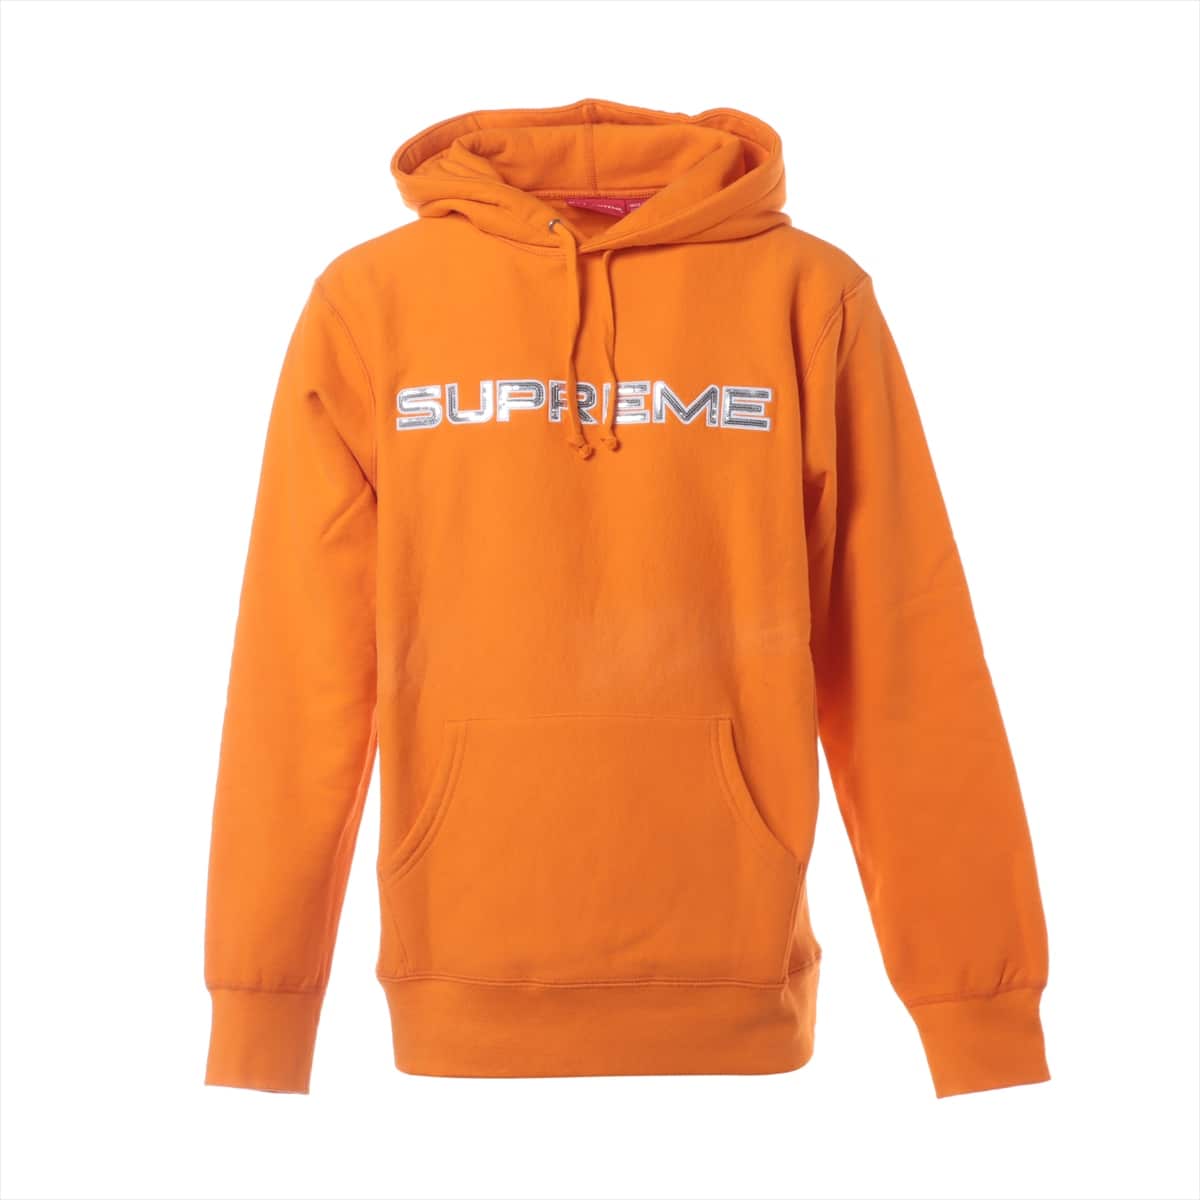 シュプリーム 17SS コットン パーカー L メンズ オレンジ Sequin Logo Hooded Sweatshirt